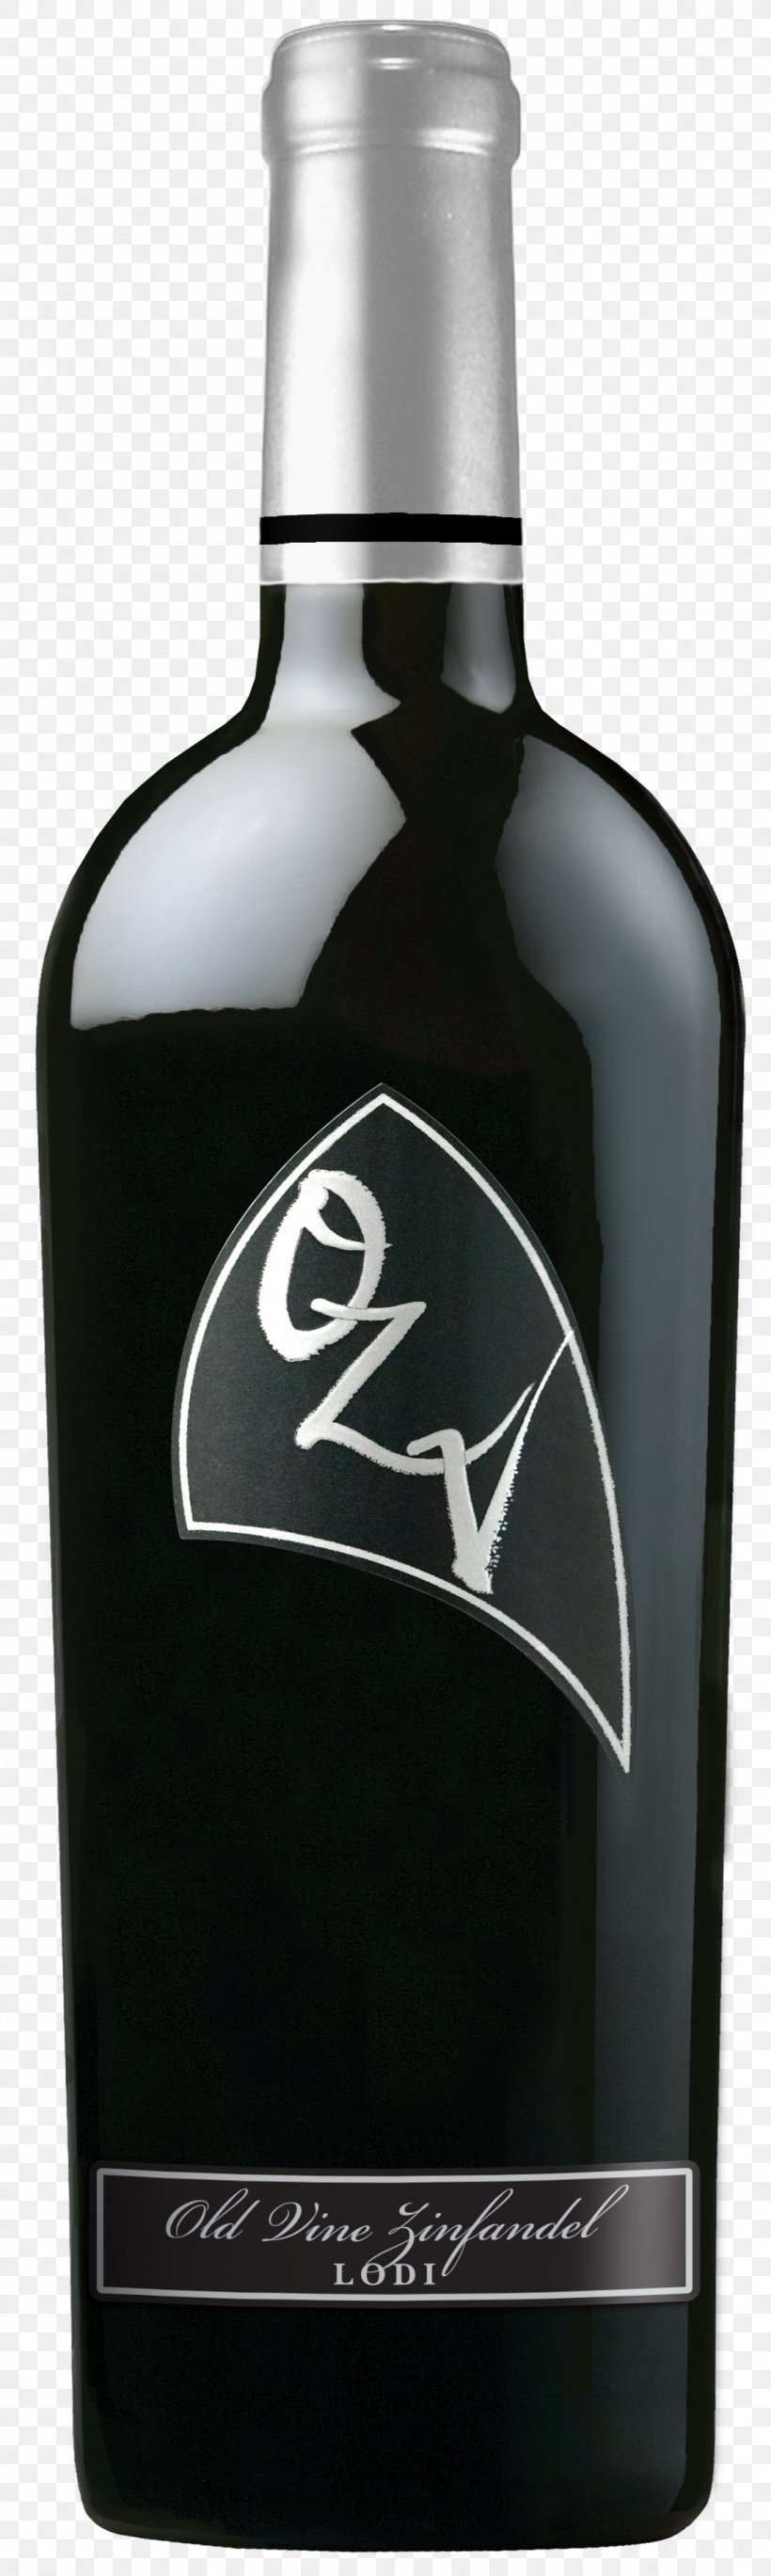 Zinfandel Lodi Oak Ridge Winery Distilled Beverage, PNG, 1100x3675px, Zinfandel, Alcoholic Beverage, Bottle, Distilled Beverage, Drink Download Free